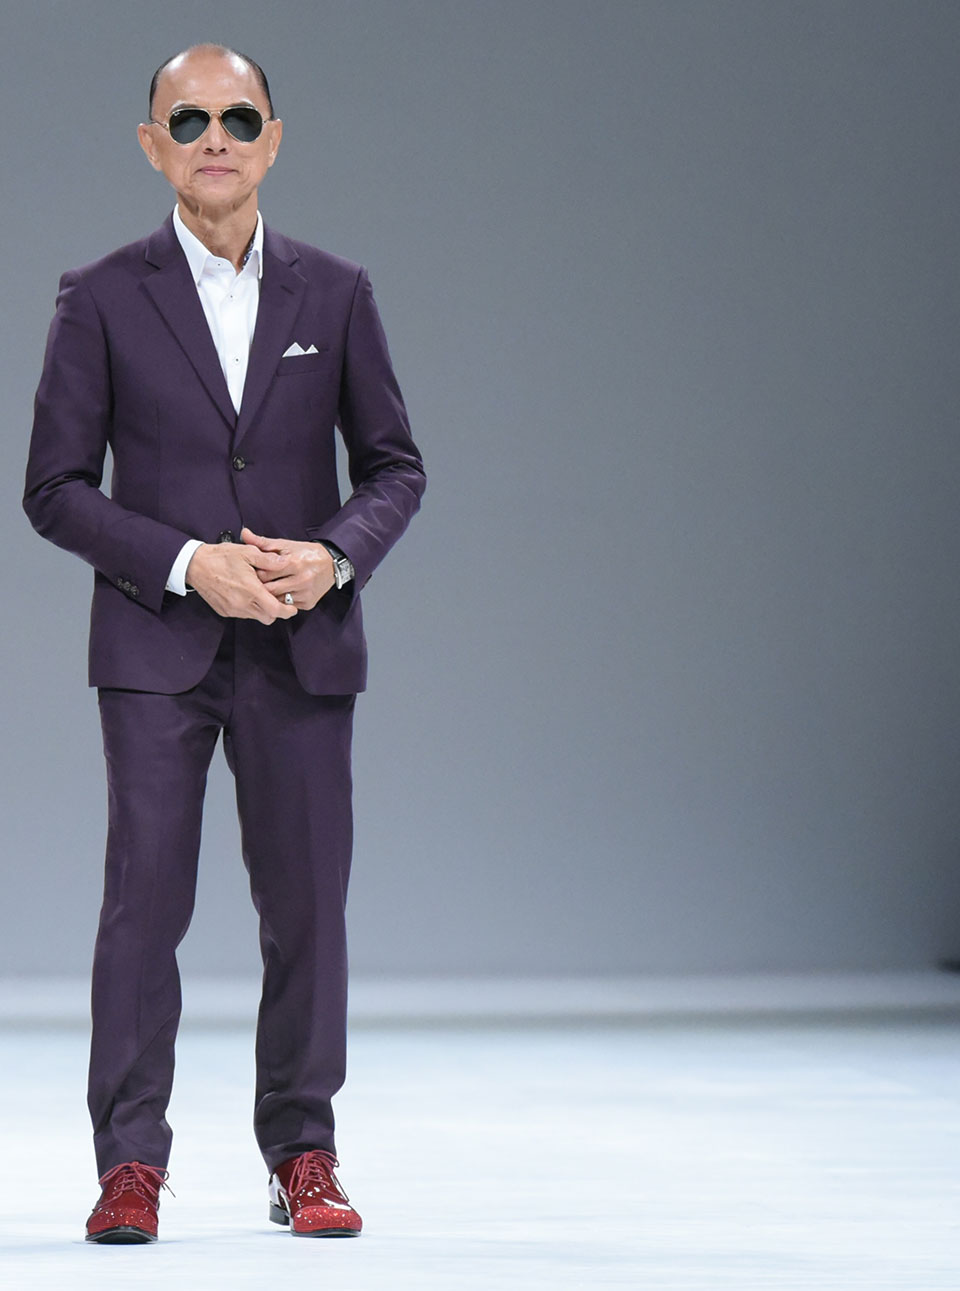 Jimmy Choo fashion designer